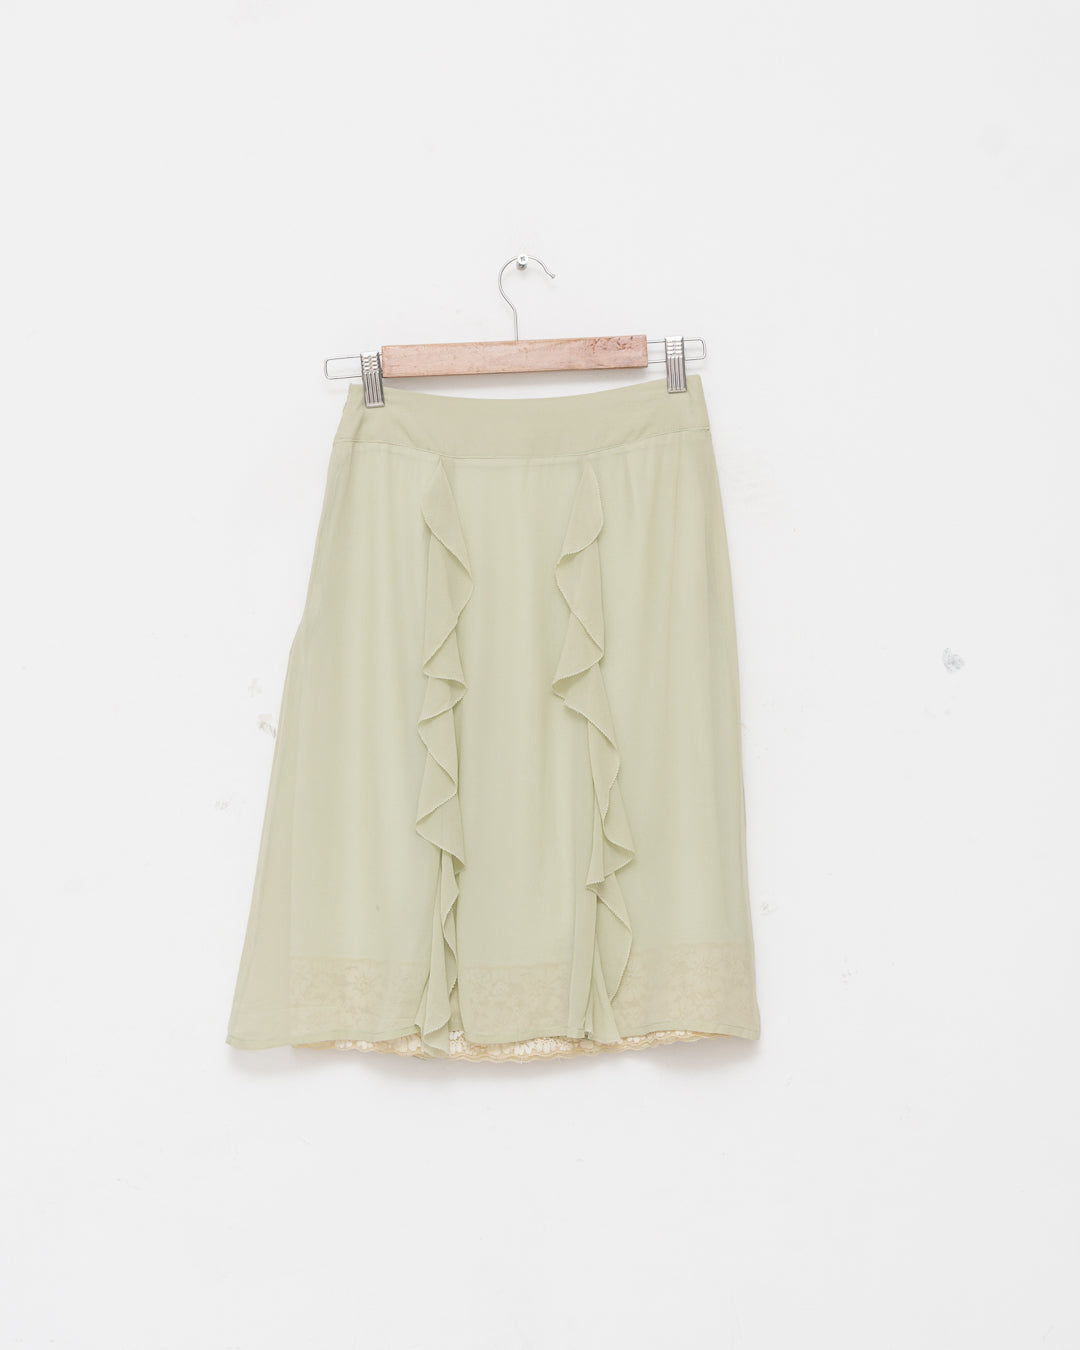 Diane Von Furstenberg Silk Skirt